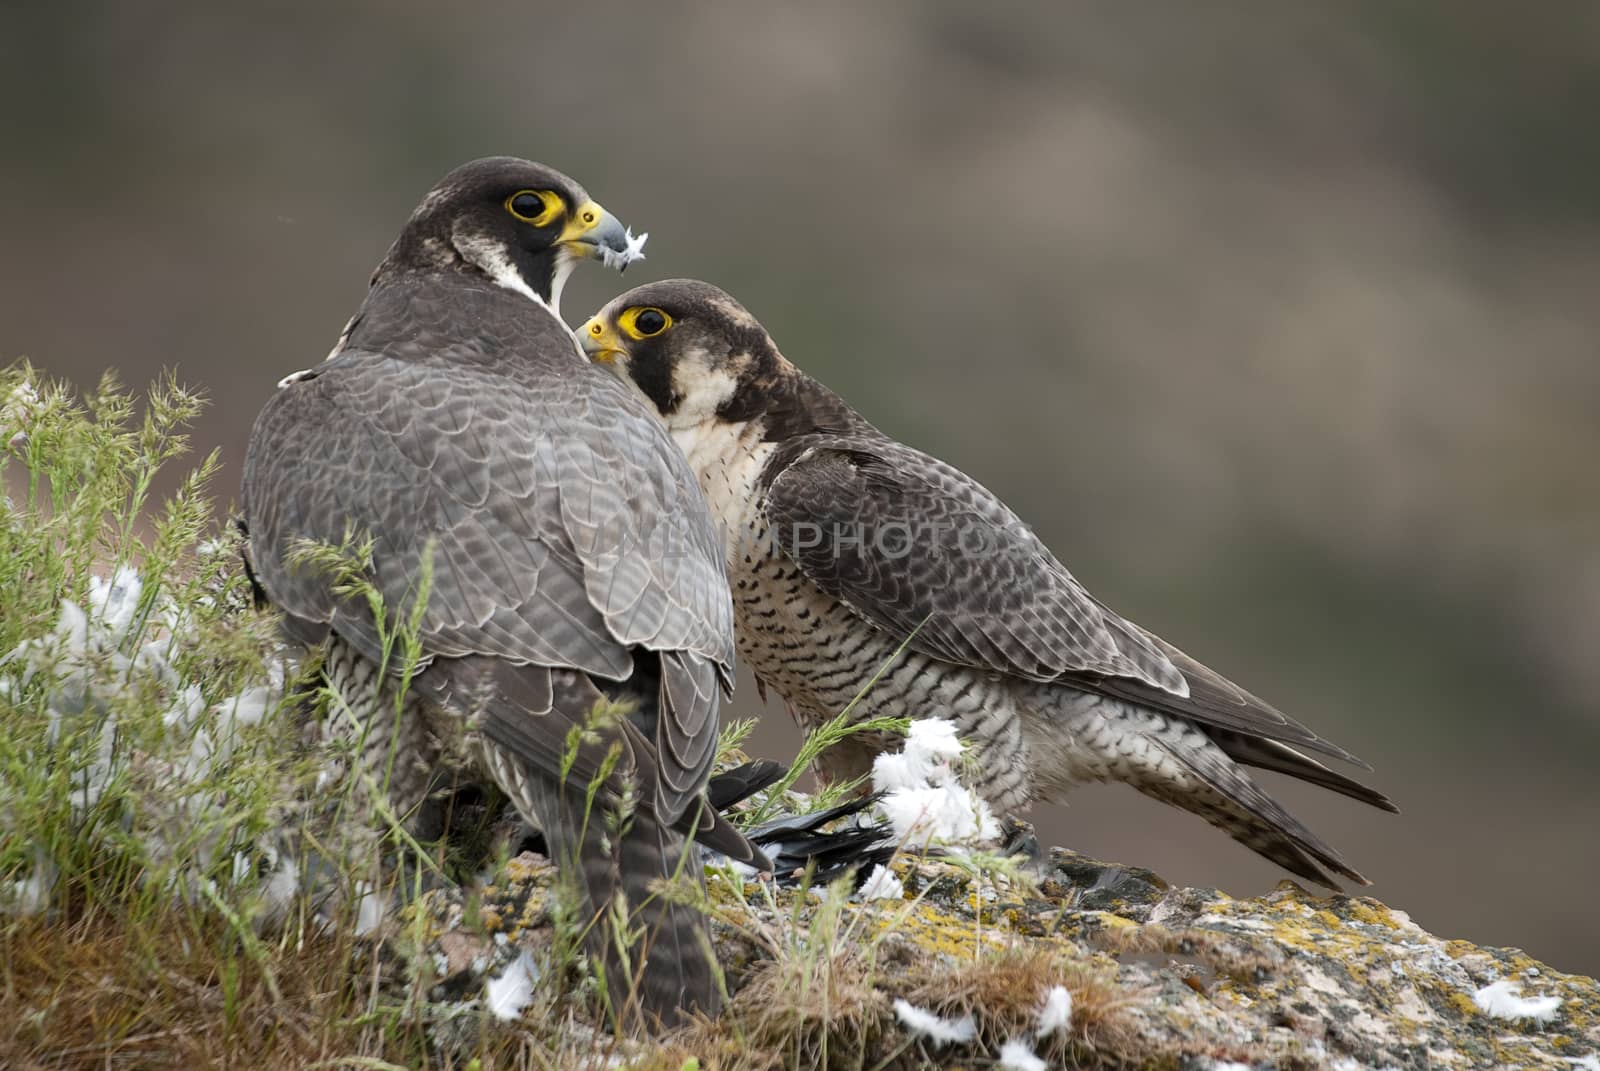 Peregrine falcon on the rock. Bird of prey, Couple sharing their prey, a Dove, Falco peregrinus